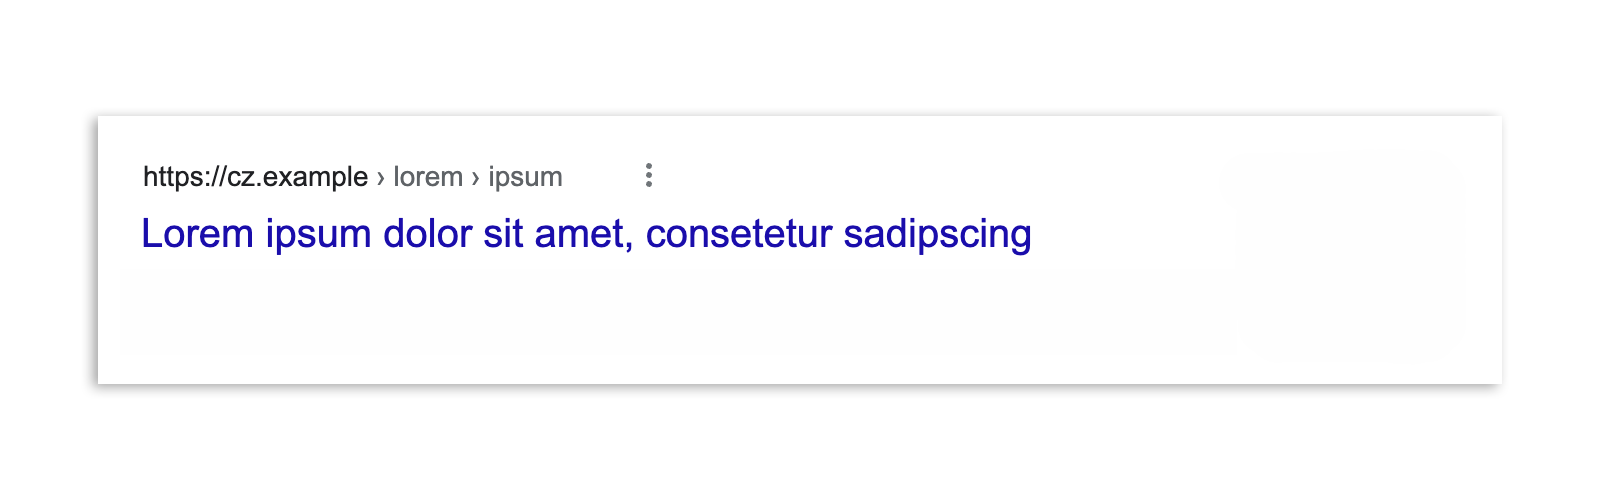 Um resultado da Pesquisa Google na República Tcheca após a promulgação da lei, que mostra somente a manchete do artigo e o URL